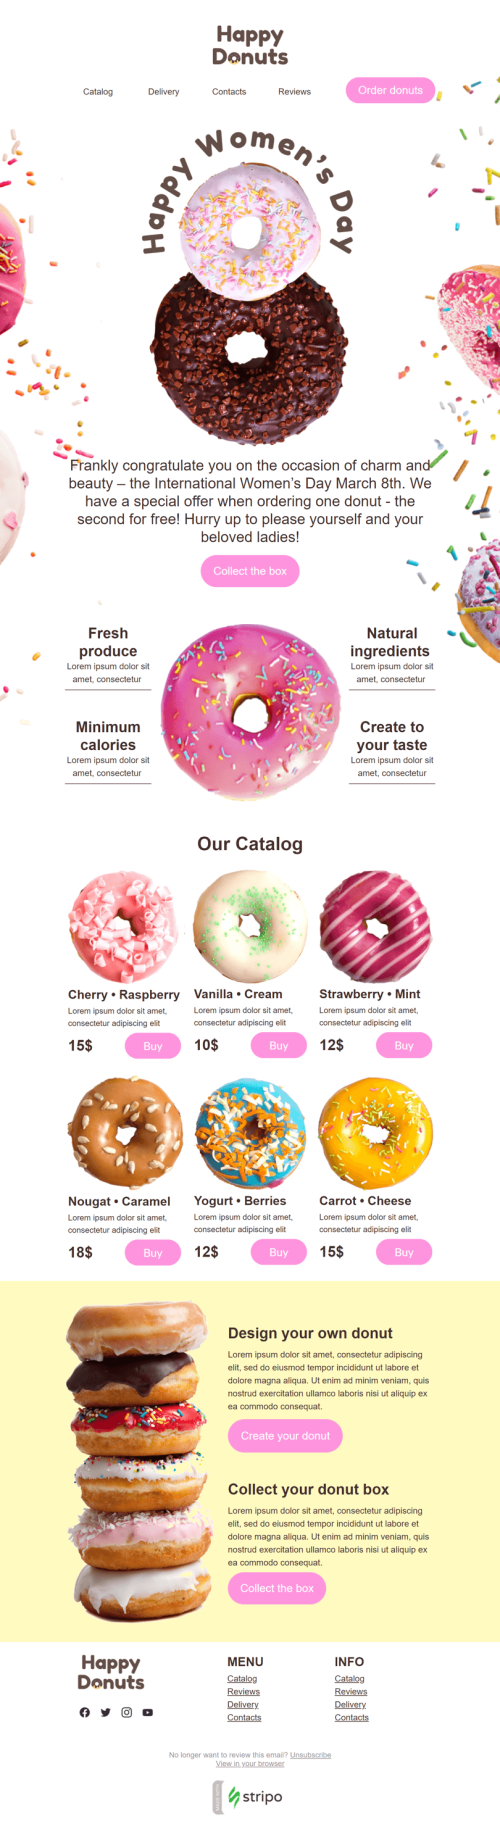 Weltfrauentag E-Mail-Vorlage «Glückliche Donuts» für Essen-Branche Desktop-Ansicht